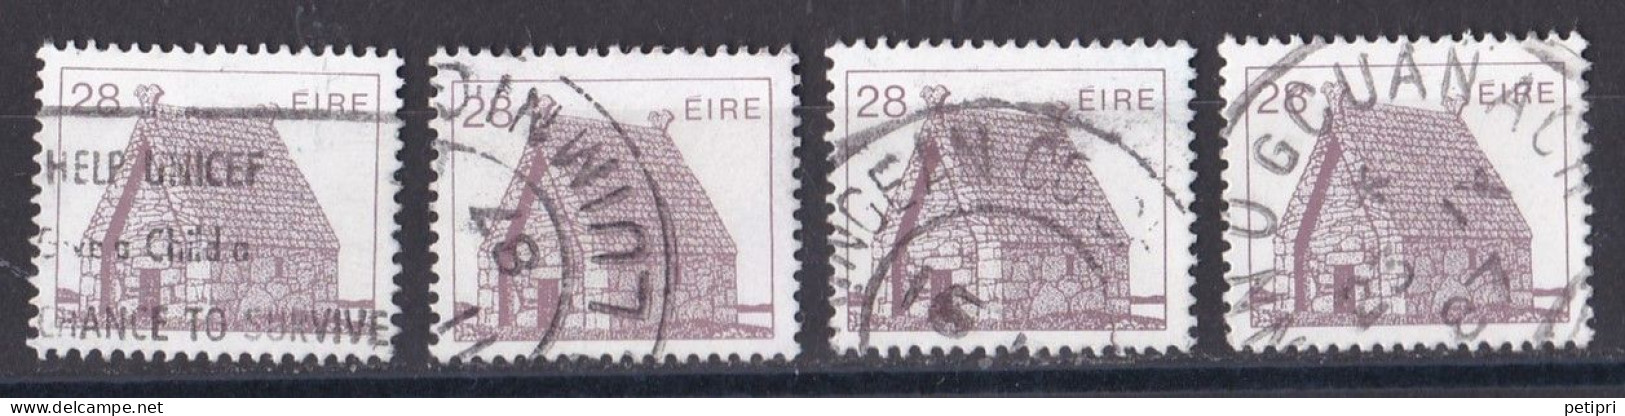 République D Irlande - 1980  89 -   Y&T  N ° 572  Oblitéré - Oblitérés